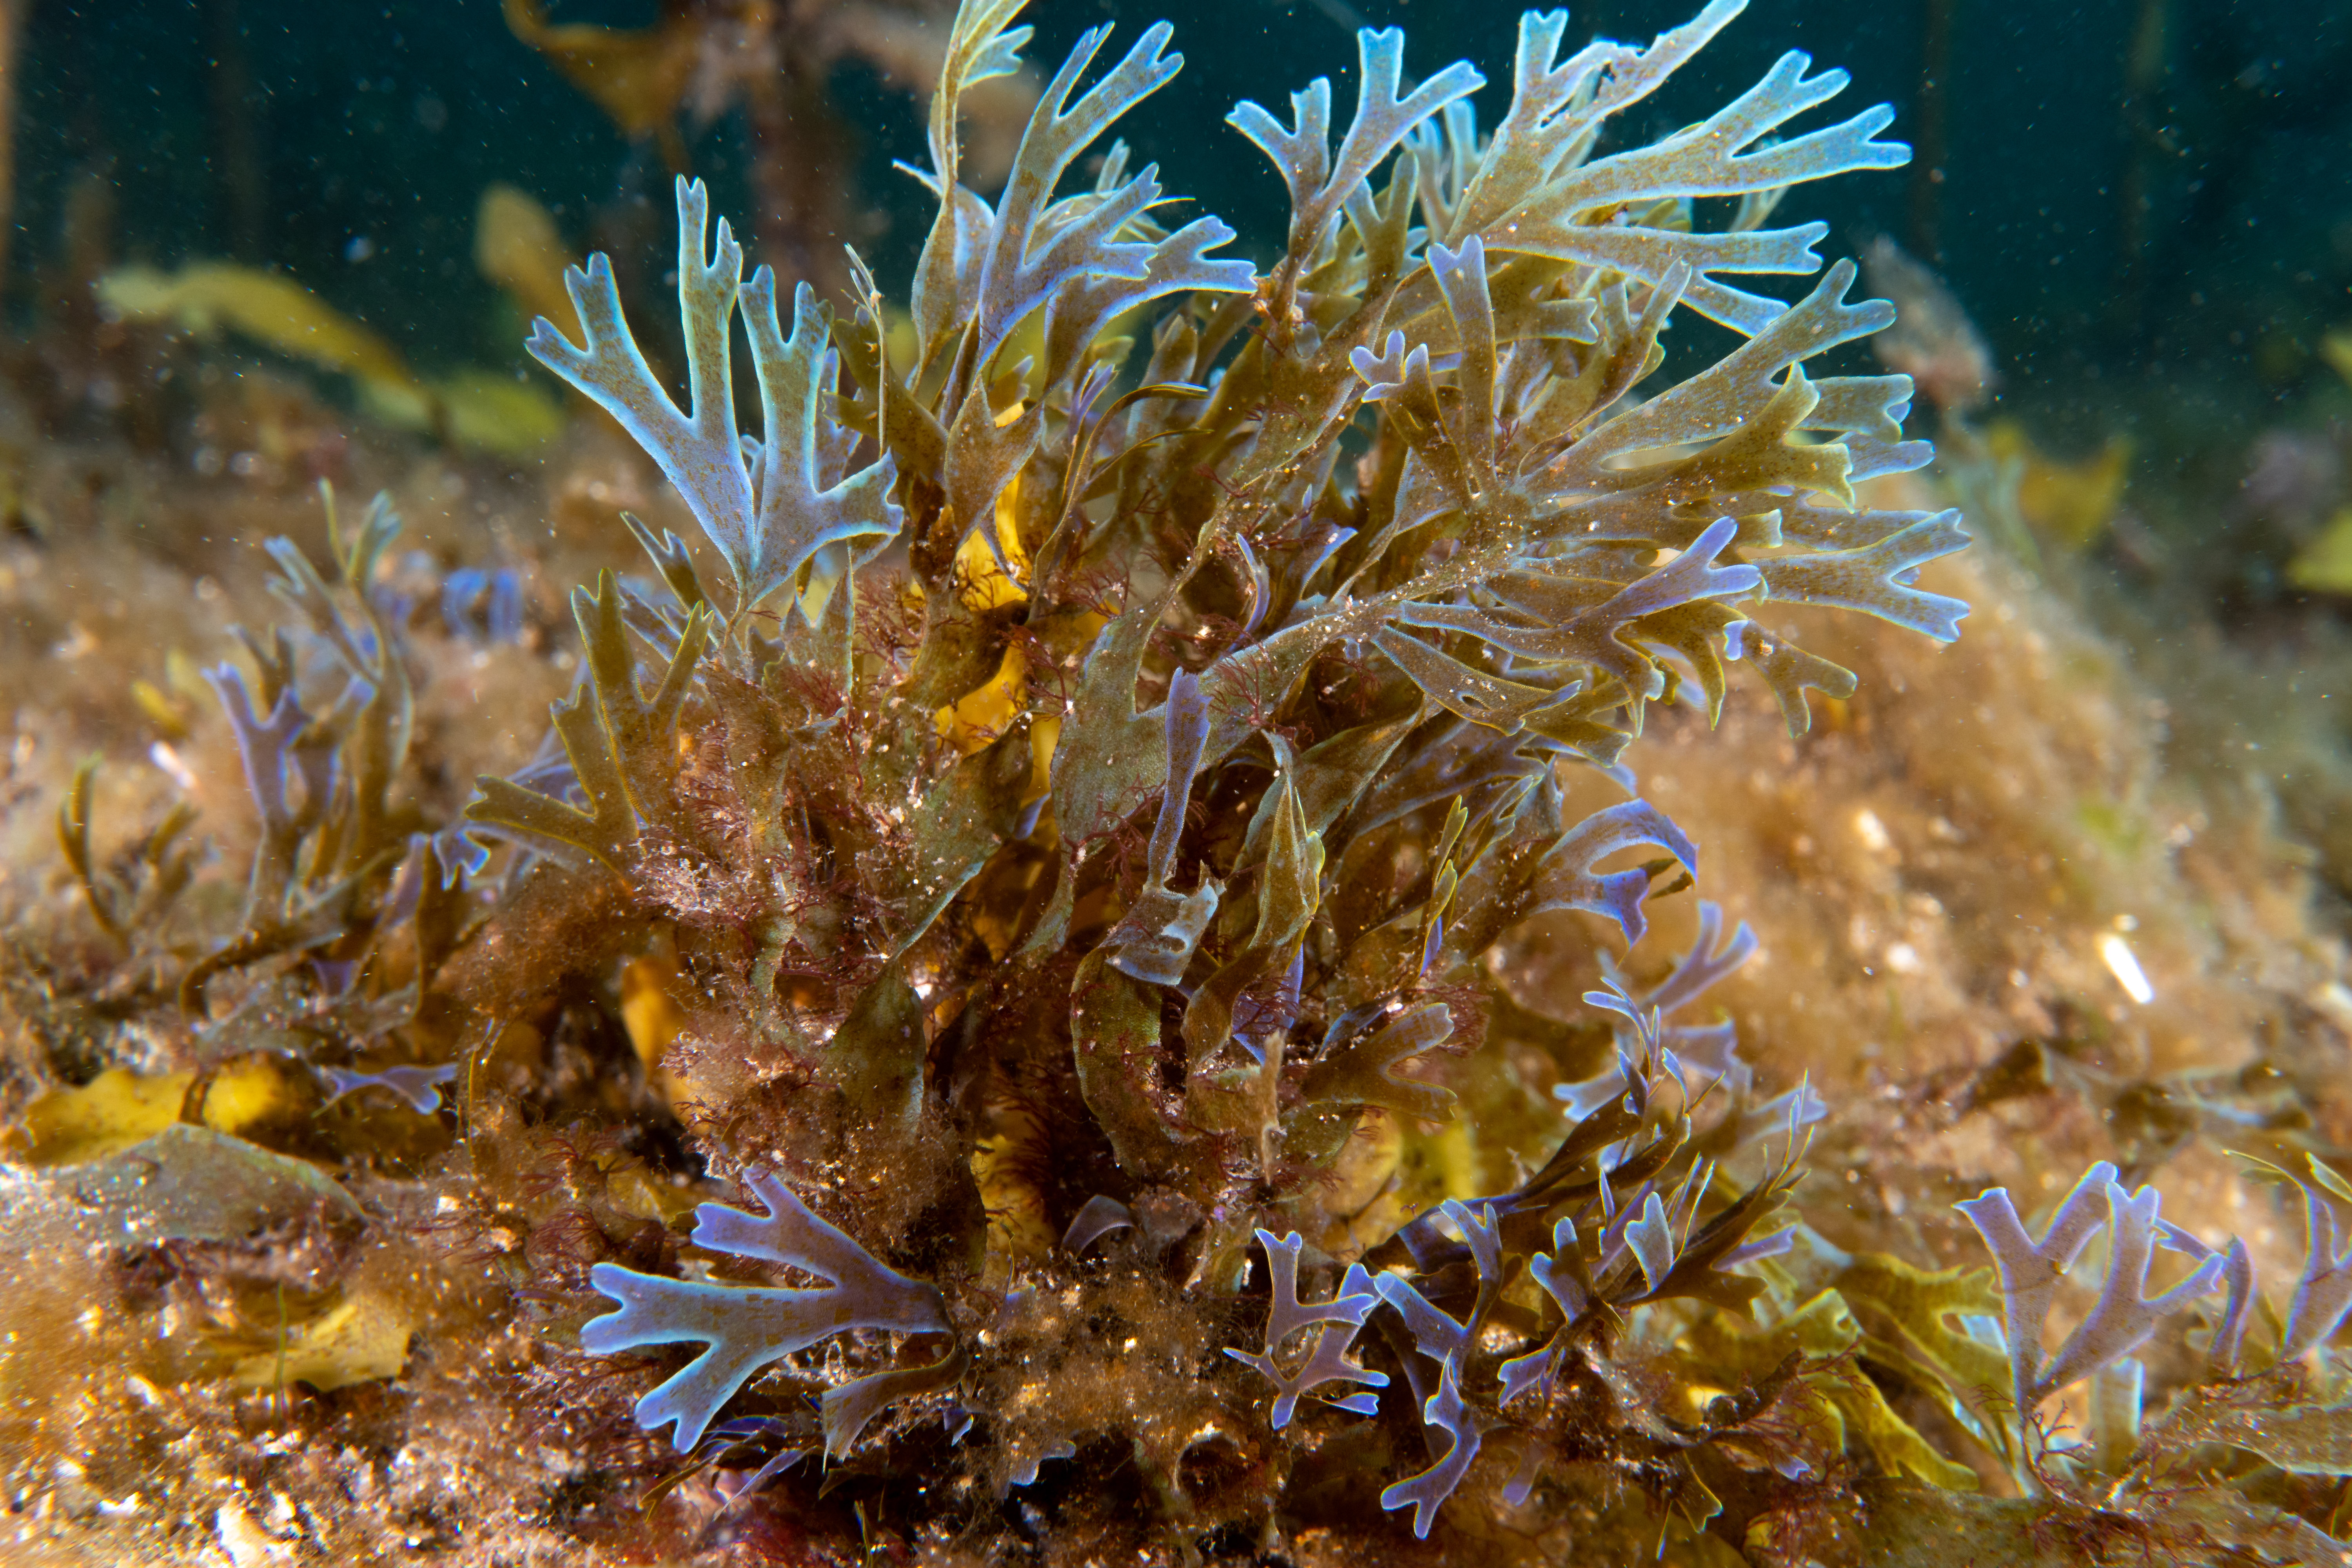 Iridescent brown algae Dictyota sp.